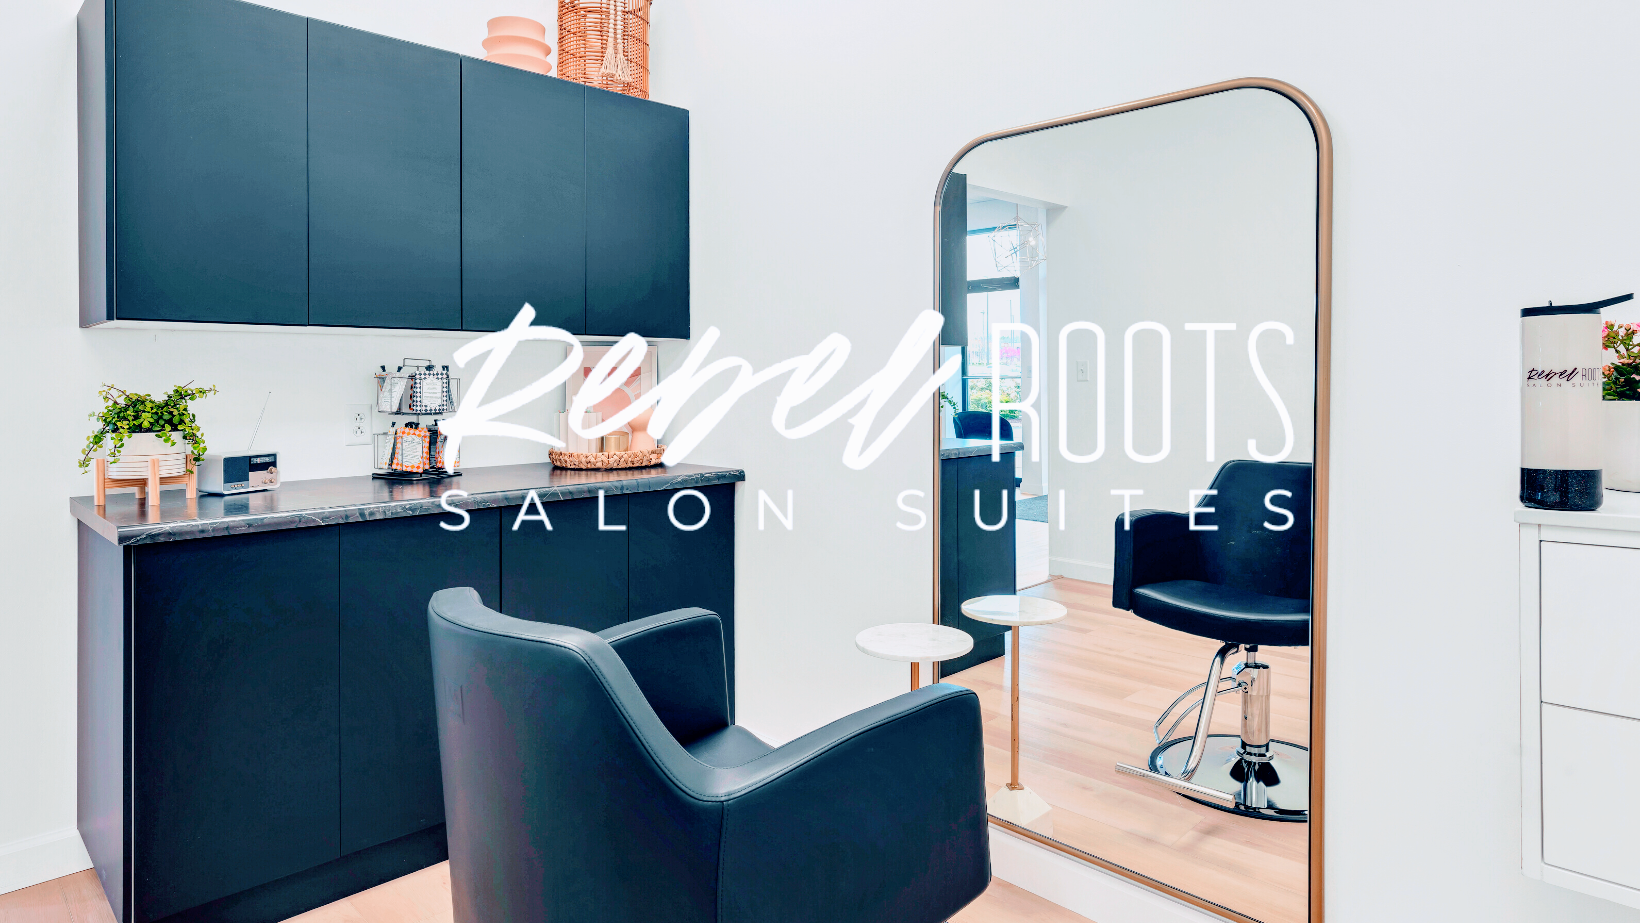 Rebel Roots Salon Suites